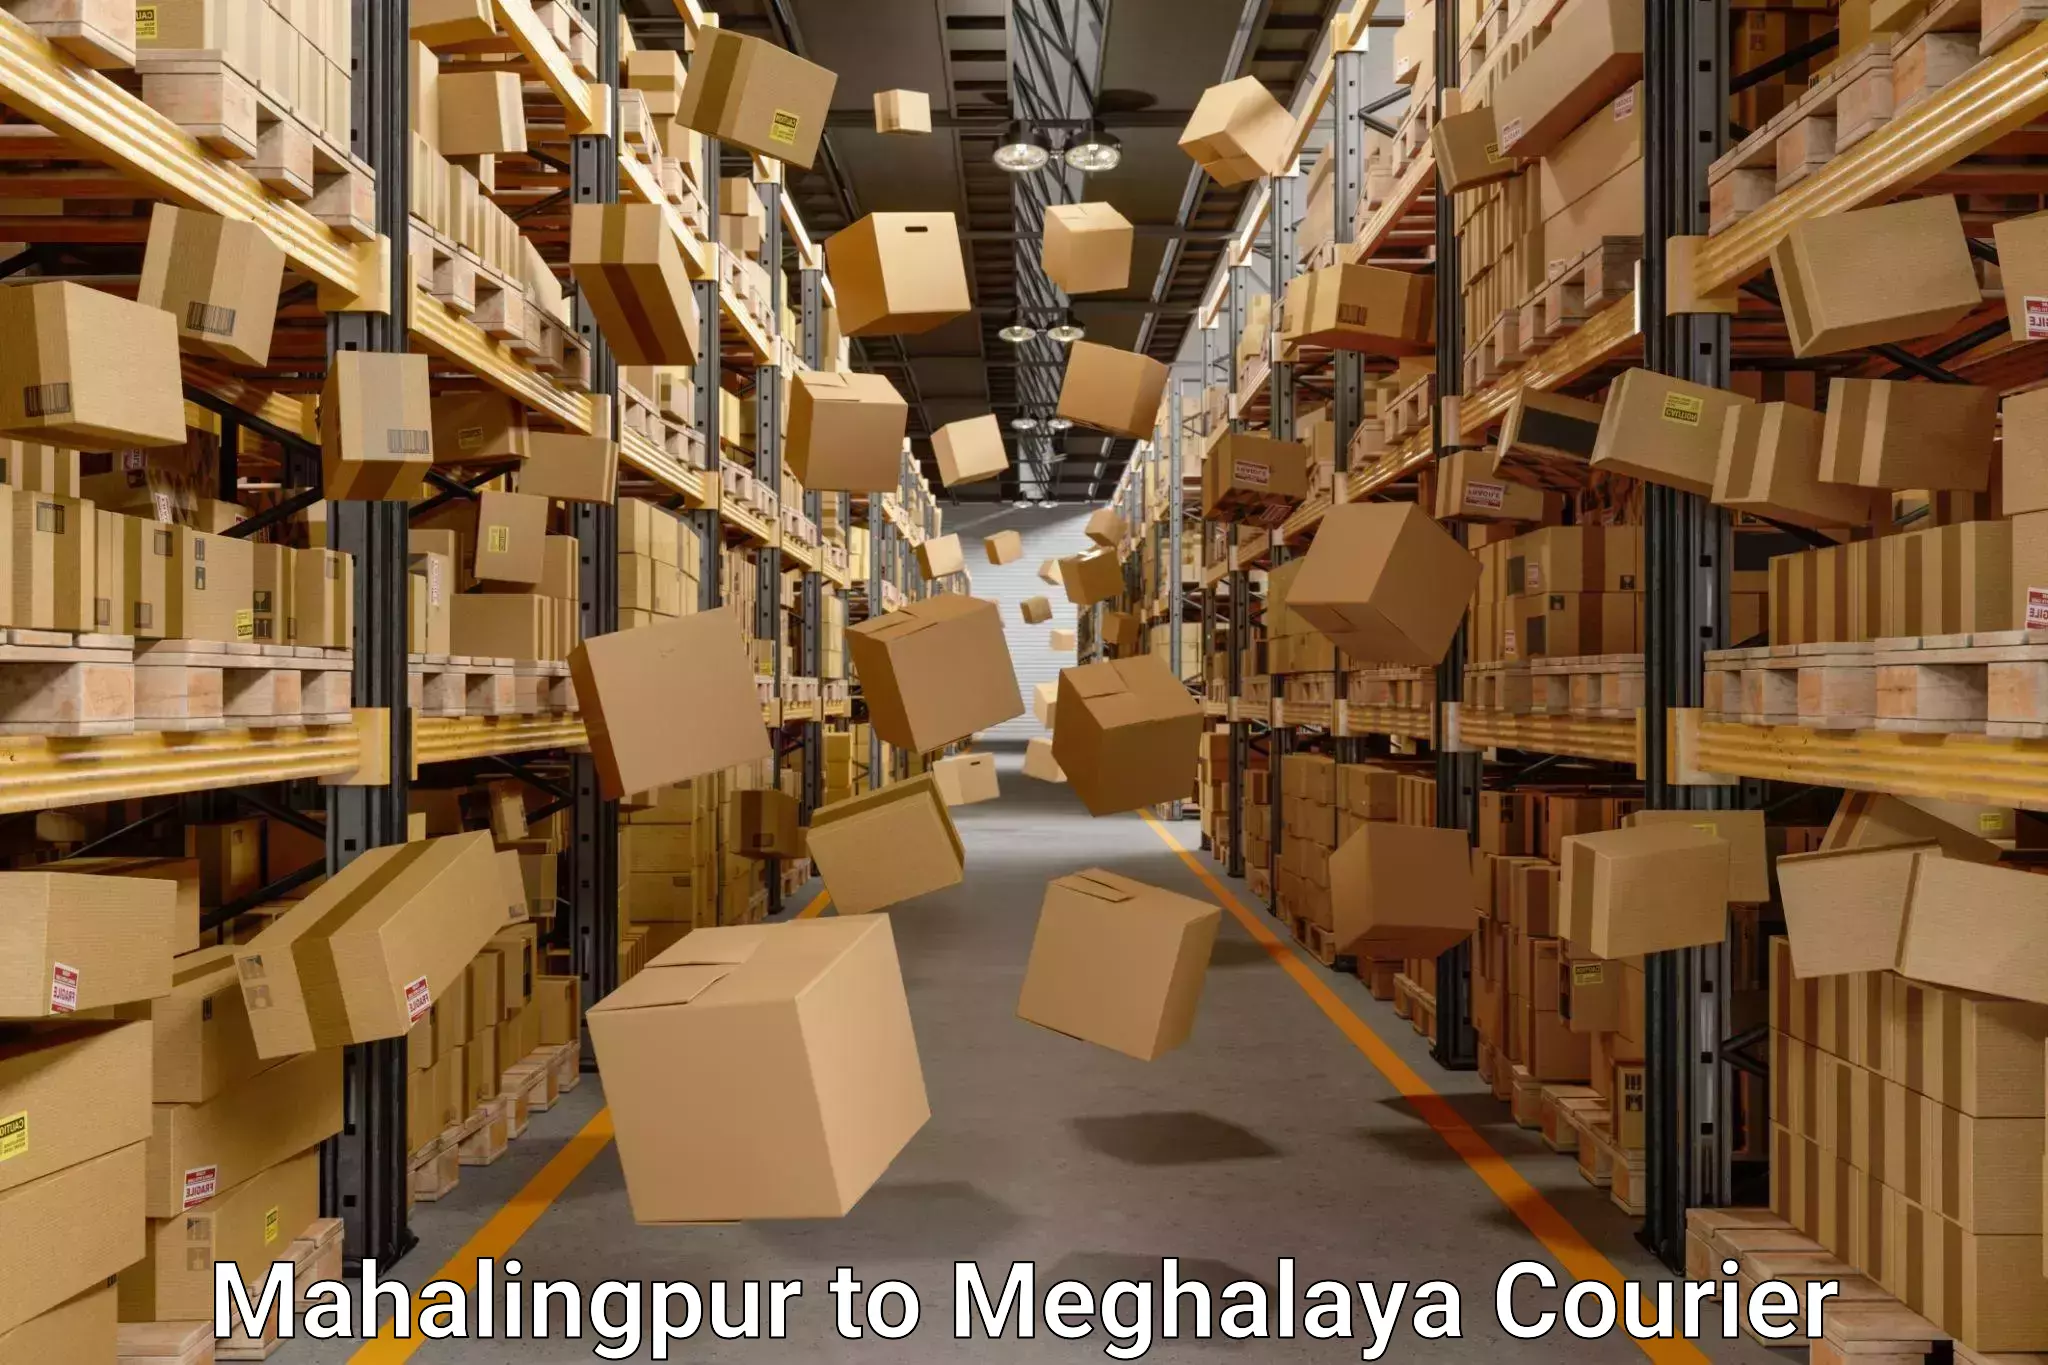 Home shifting experts Mahalingpur to Meghalaya